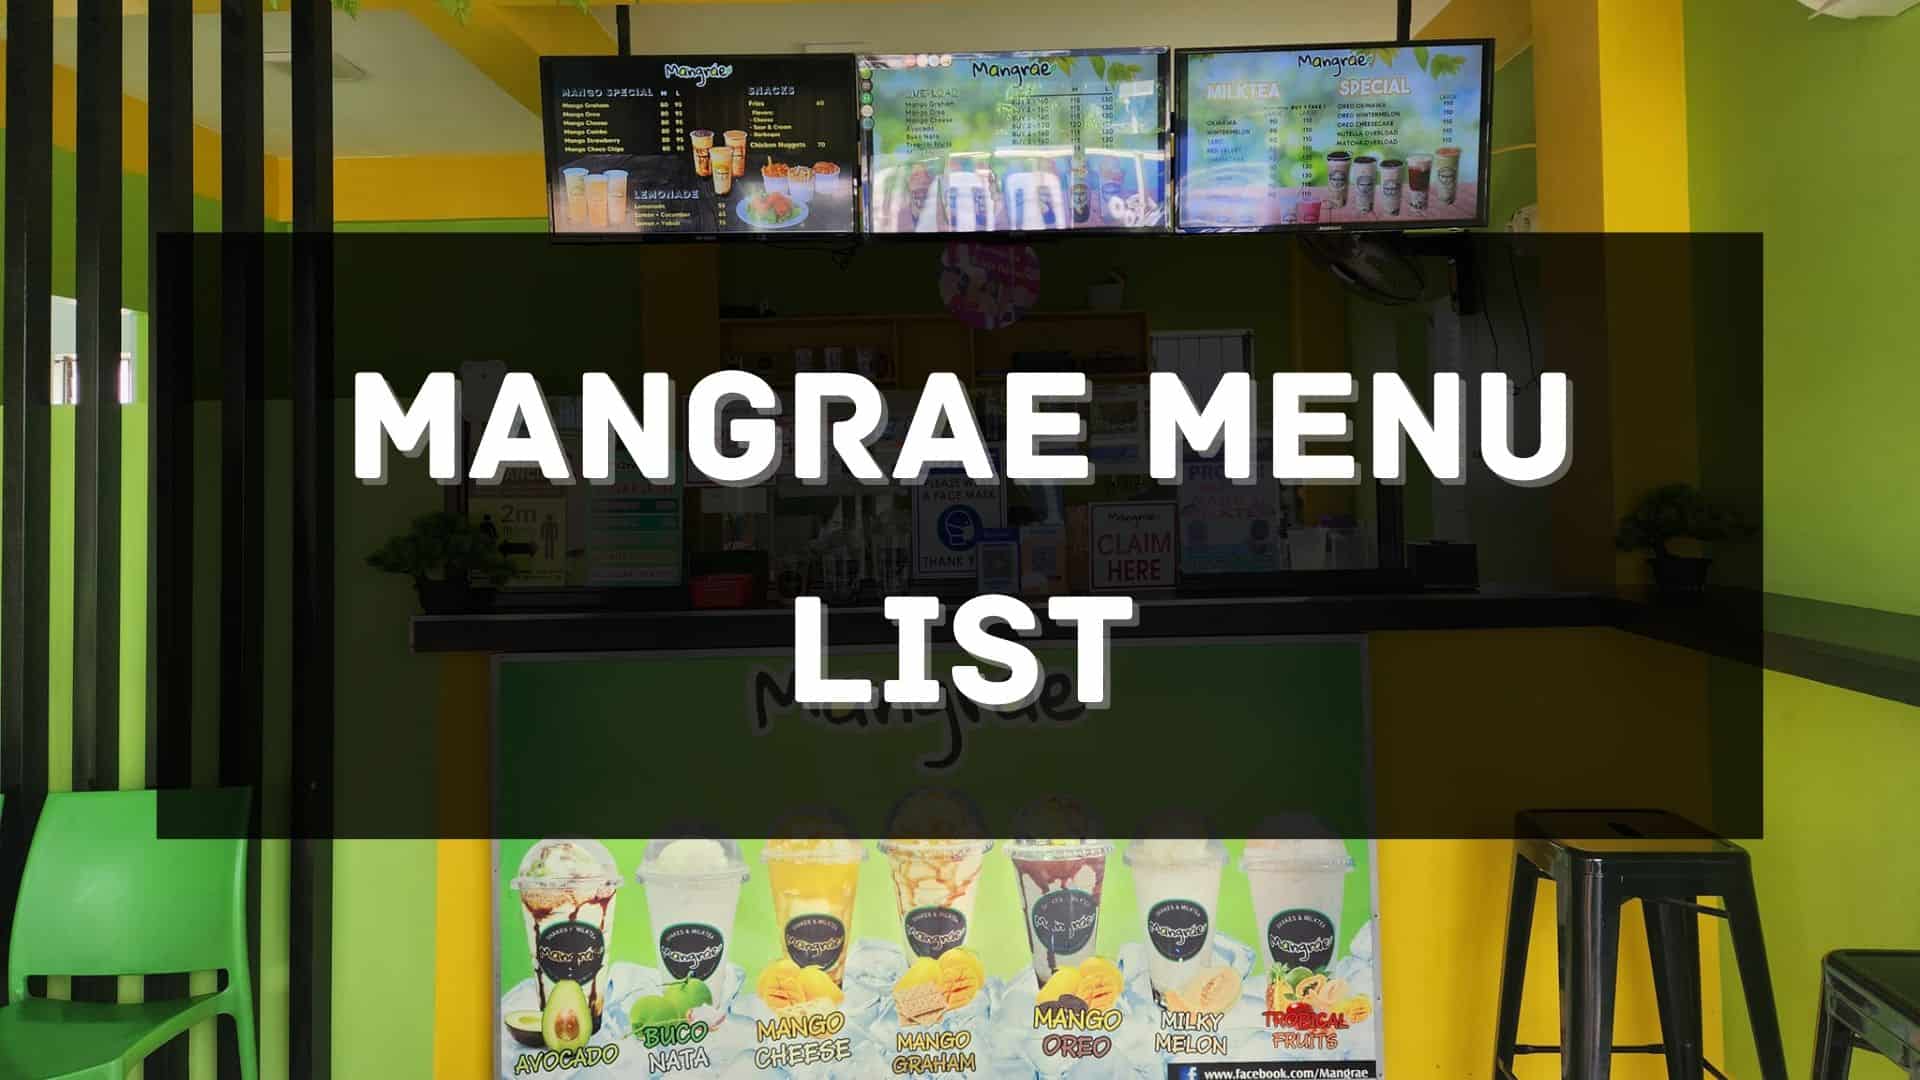 mangrae menu prices philippines